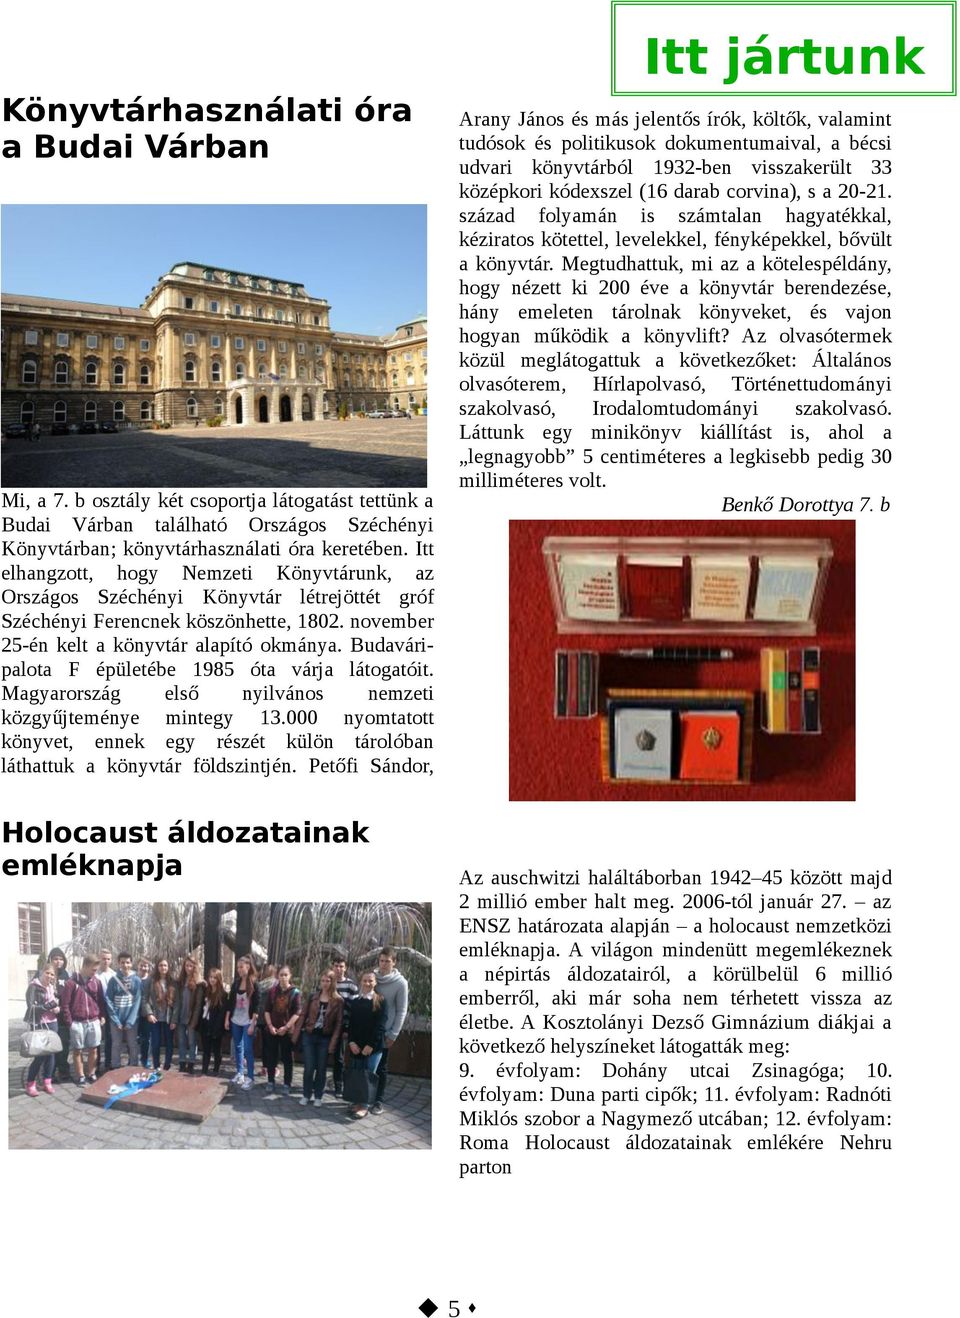 Budaváripalota F épületébe 1985 óta várja látogatóit. Magyarország első nyilvános nemzeti közgyűjteménye mintegy 13.